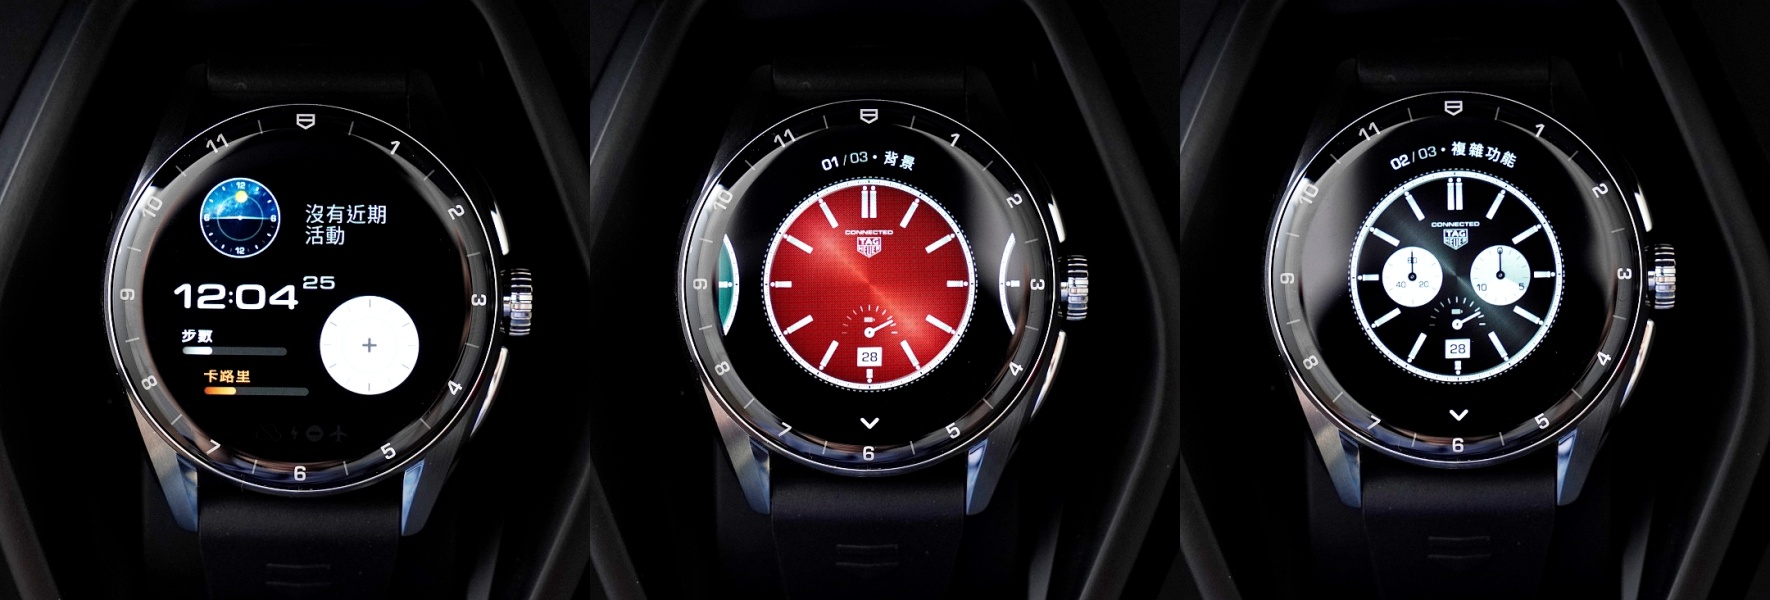 TAG Heuer 精品智慧錶 Connected Calibre E4 實測，以計感為出發點的聰明夥伴